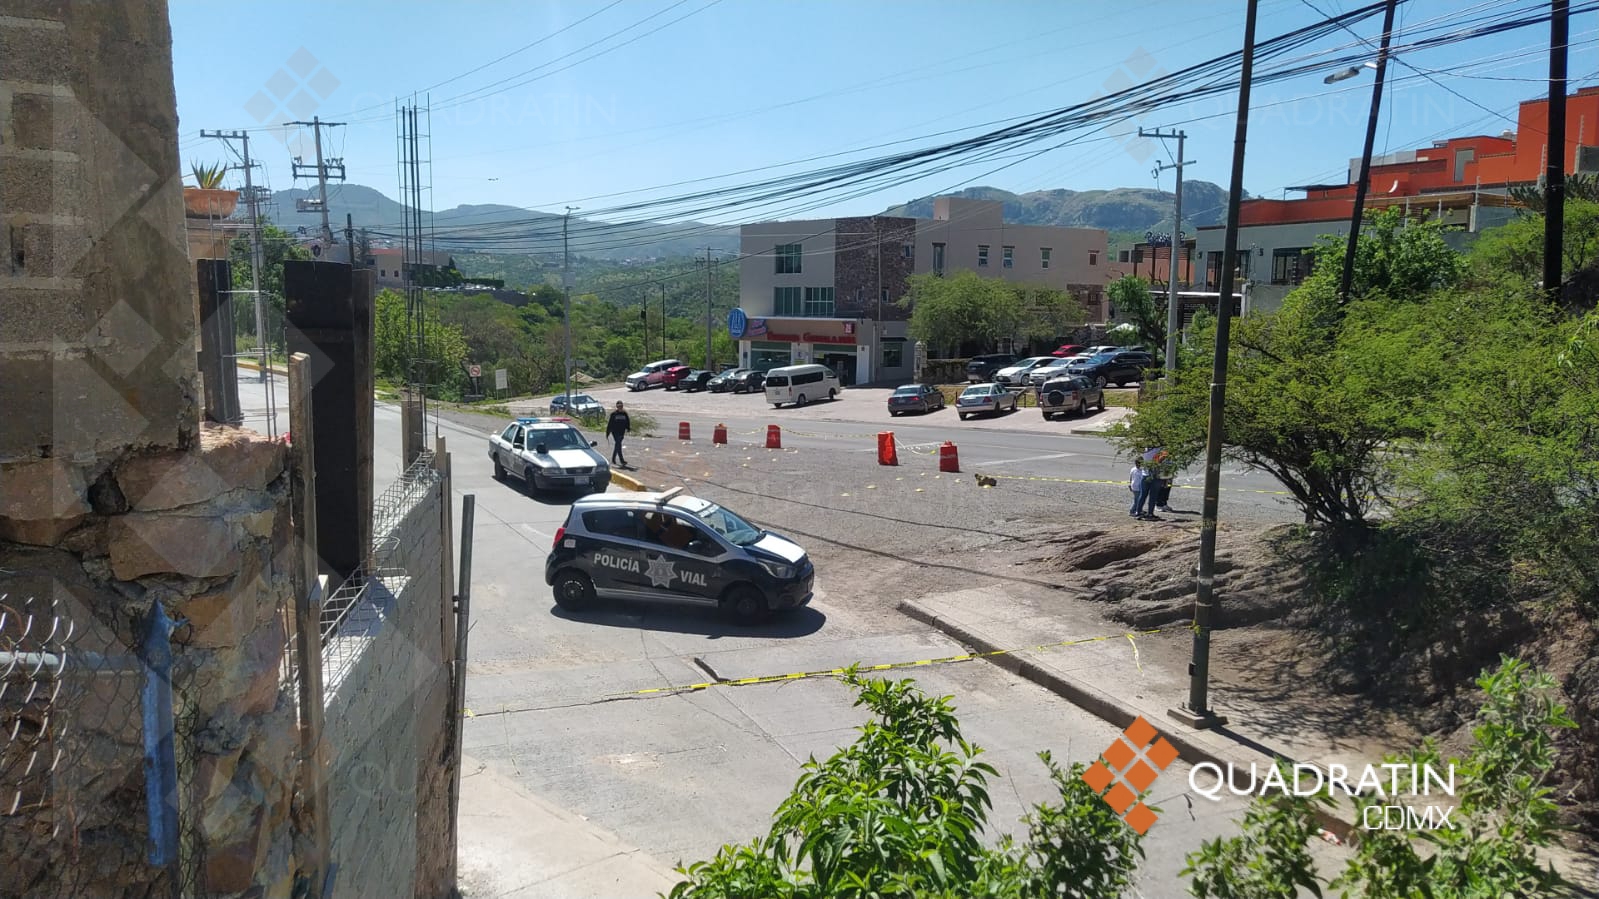 La zona del ataque fue resguardada por las autoridades. Foto: Quadratín